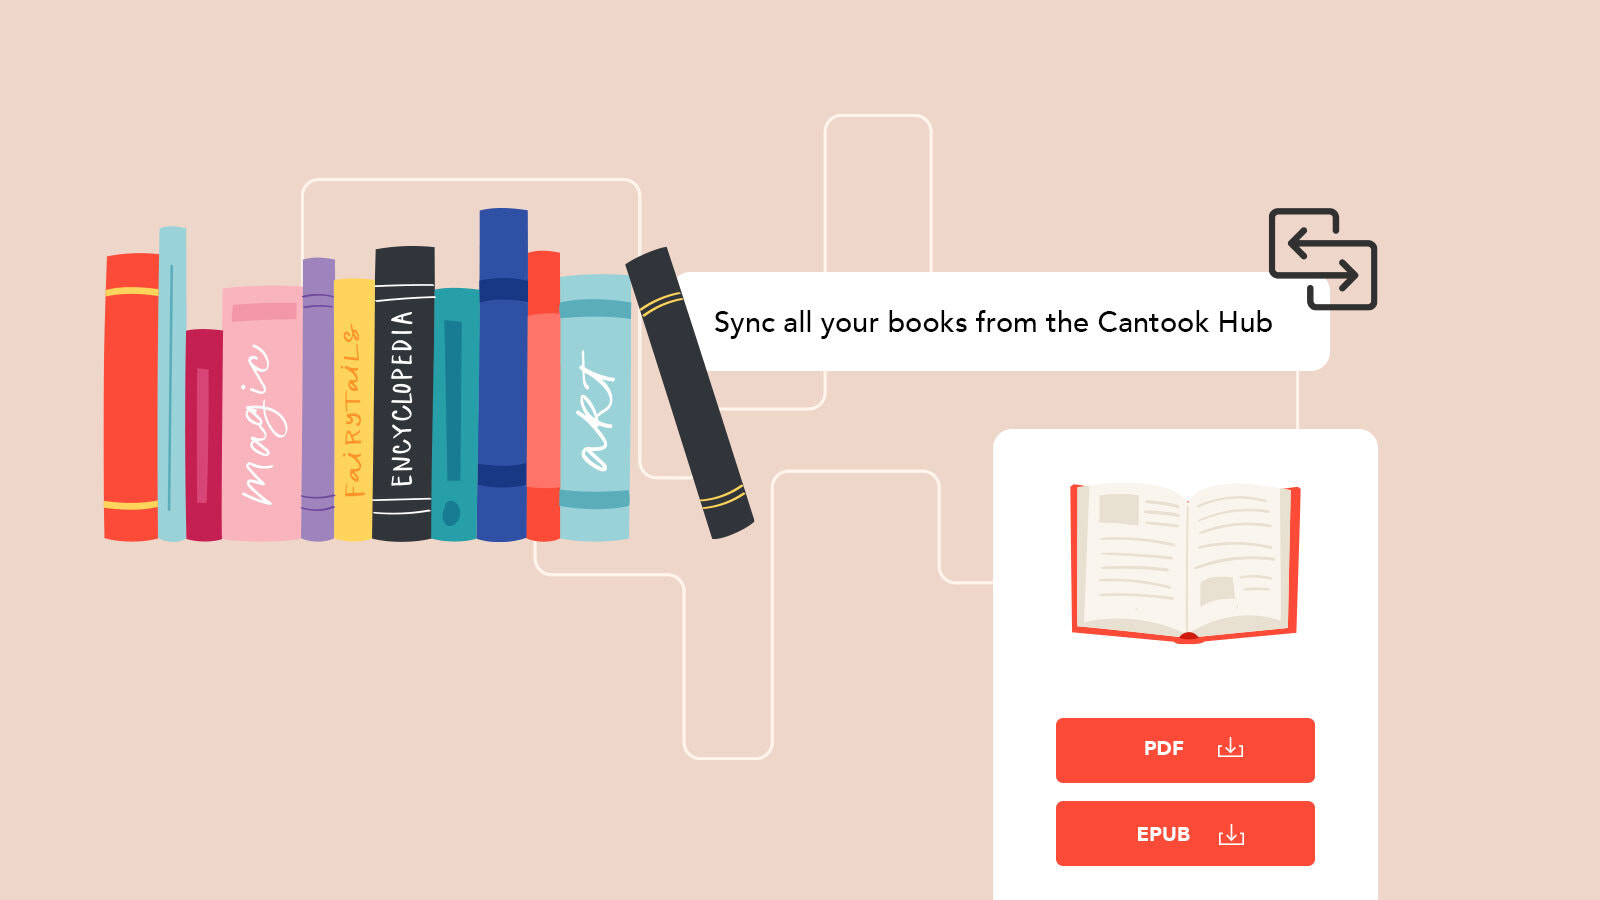 将您的Cantook Hub中的书籍同步